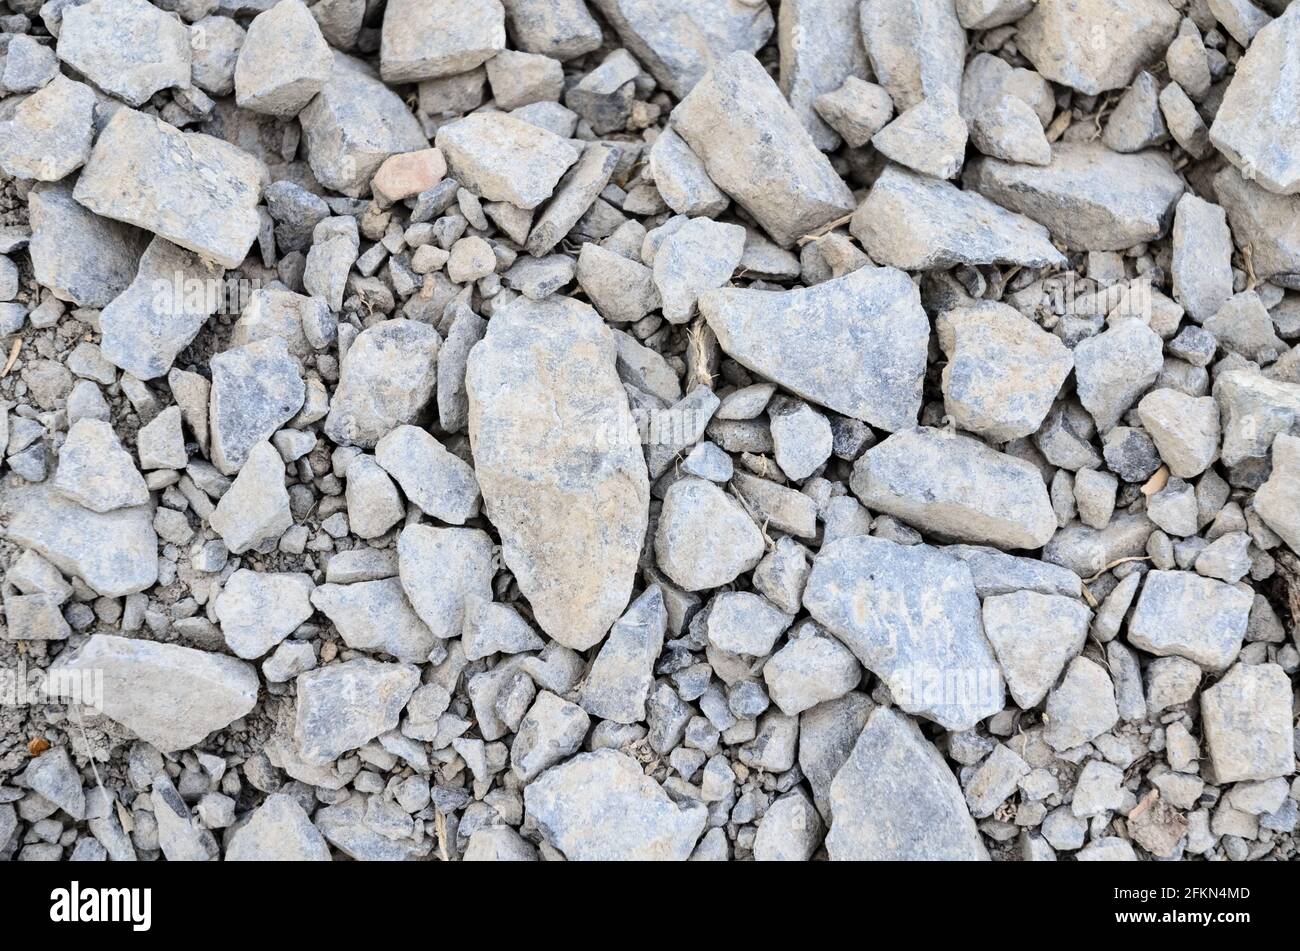 Abstrakter Hintergrund mit zerkleinertem Kies und kleinen grauen Felsen und Steinen, Nahaufnahme von direkt oben Stockfoto